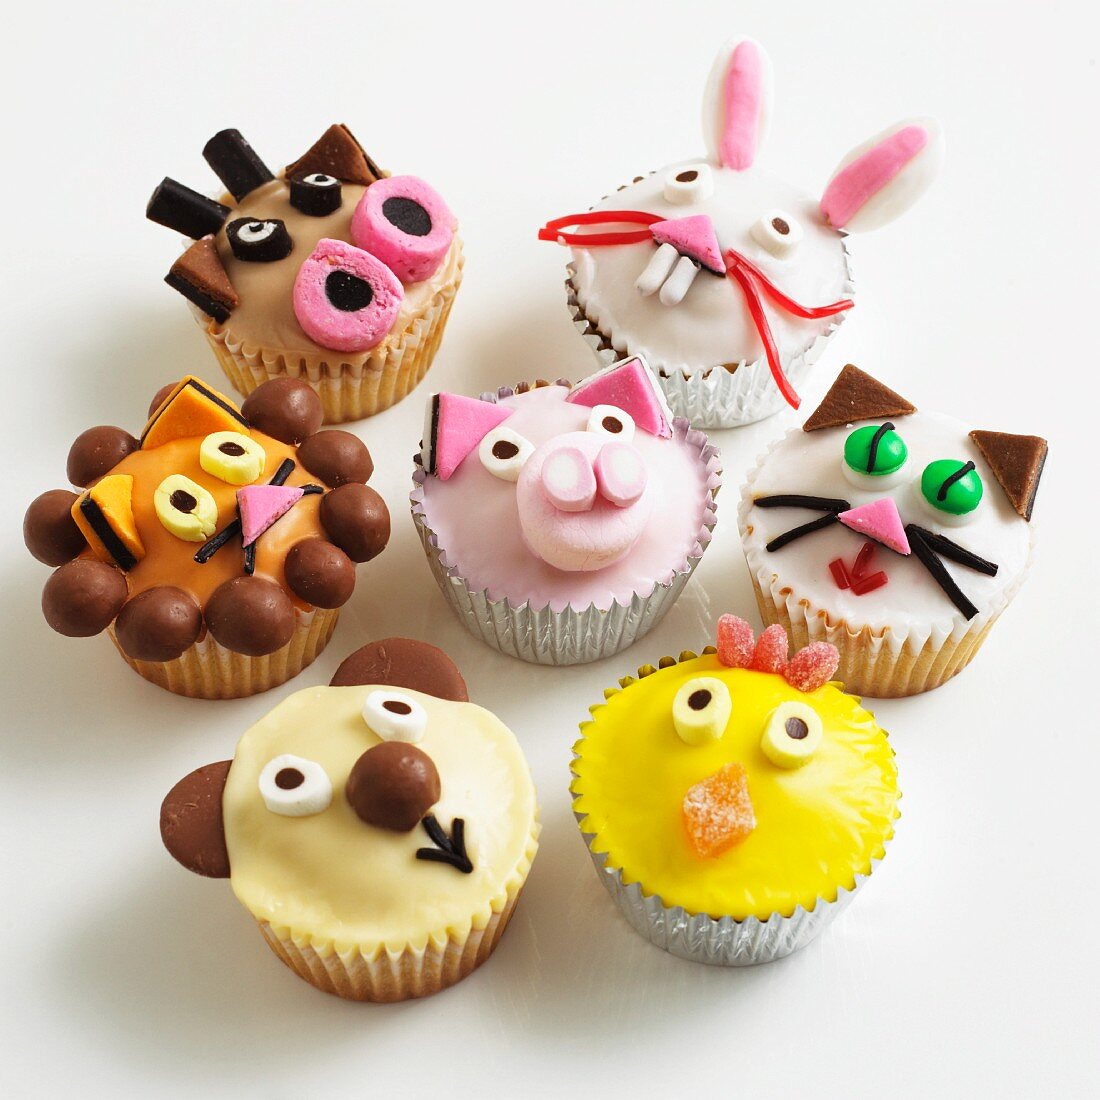 Lustige Cupcakes mit Tiergesichtern